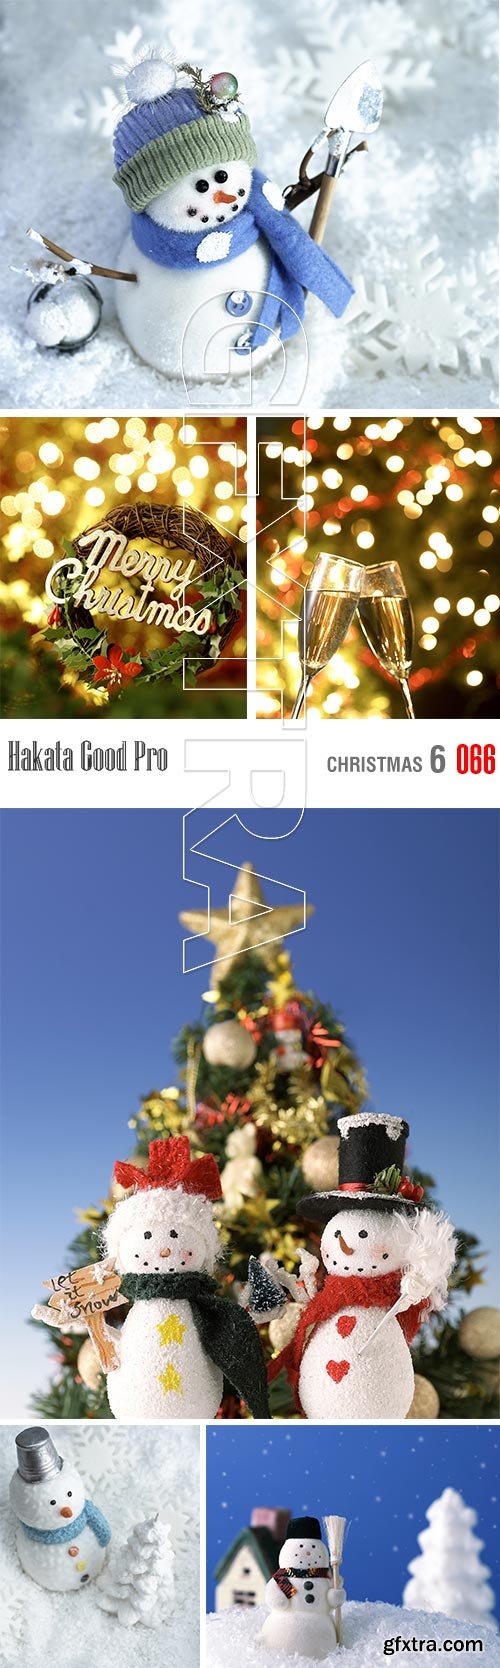 Hakata Good Pro HG066 Christmas 6